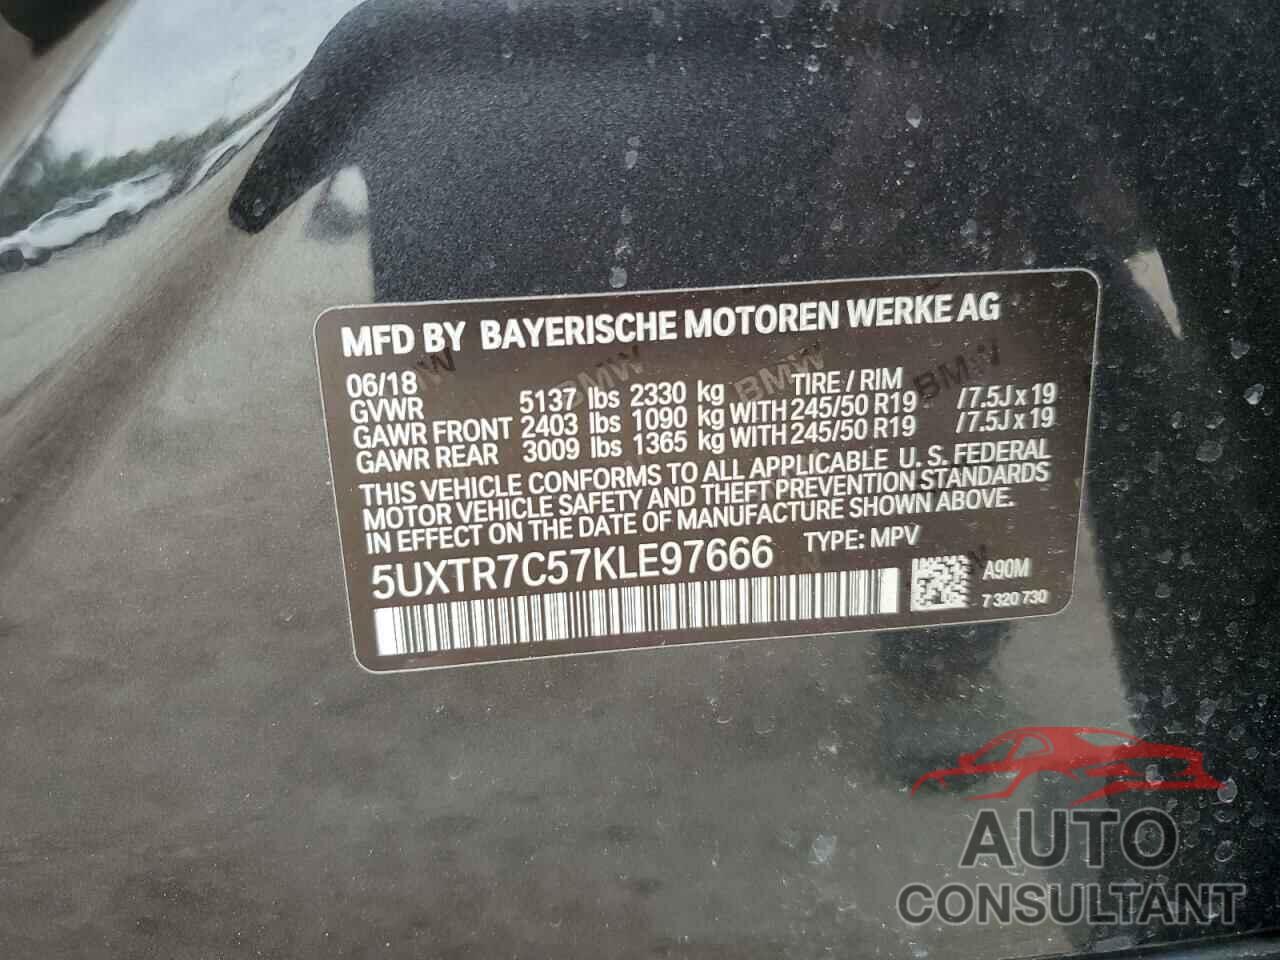 BMW X3 2019 - 5UXTR7C57KLE97666